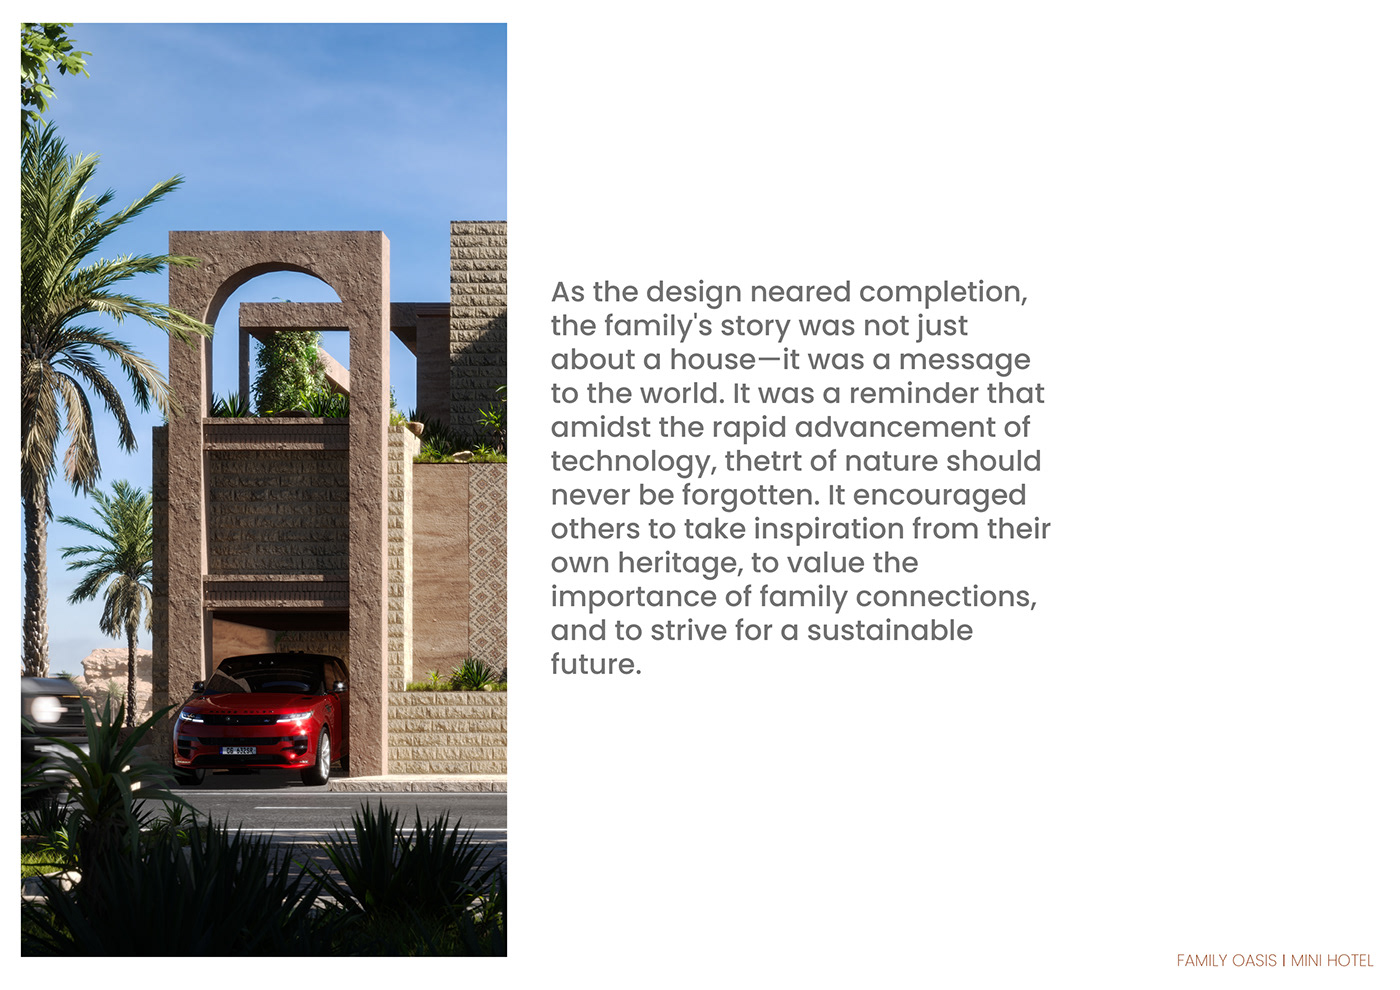 architecture design 3ds max Villa dubai desert Landscape photoshop visualization interior design 